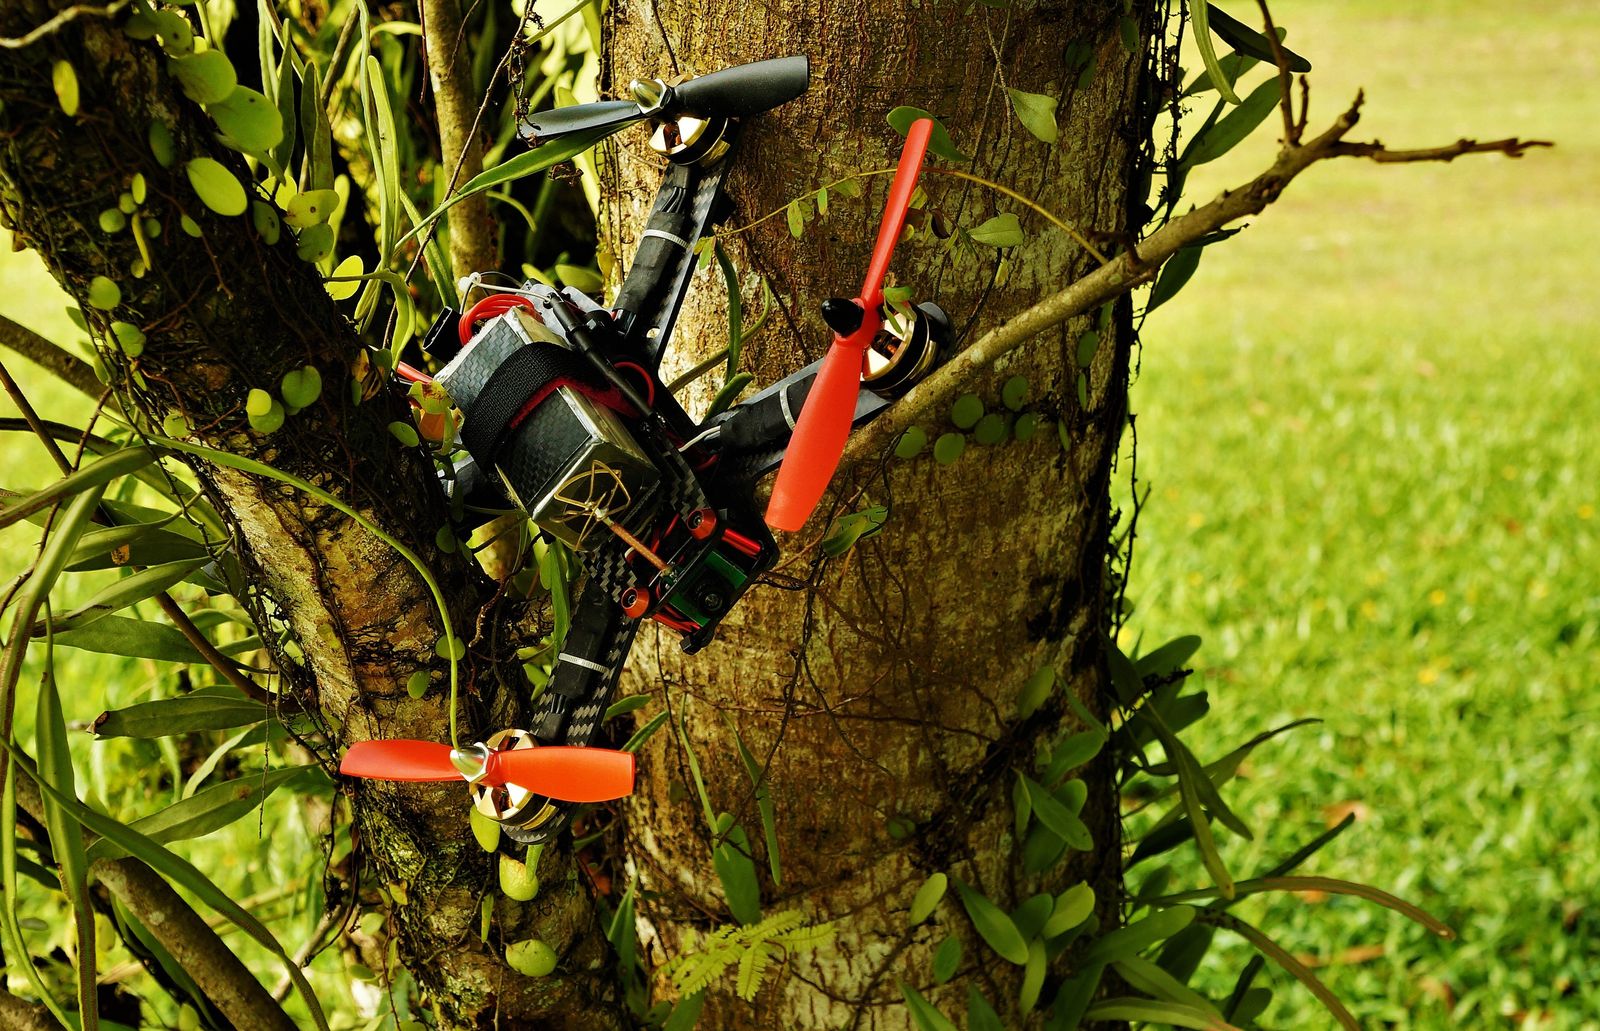 How to Get a Drone Out of a Tree (Do's & Don'ts Discussed)